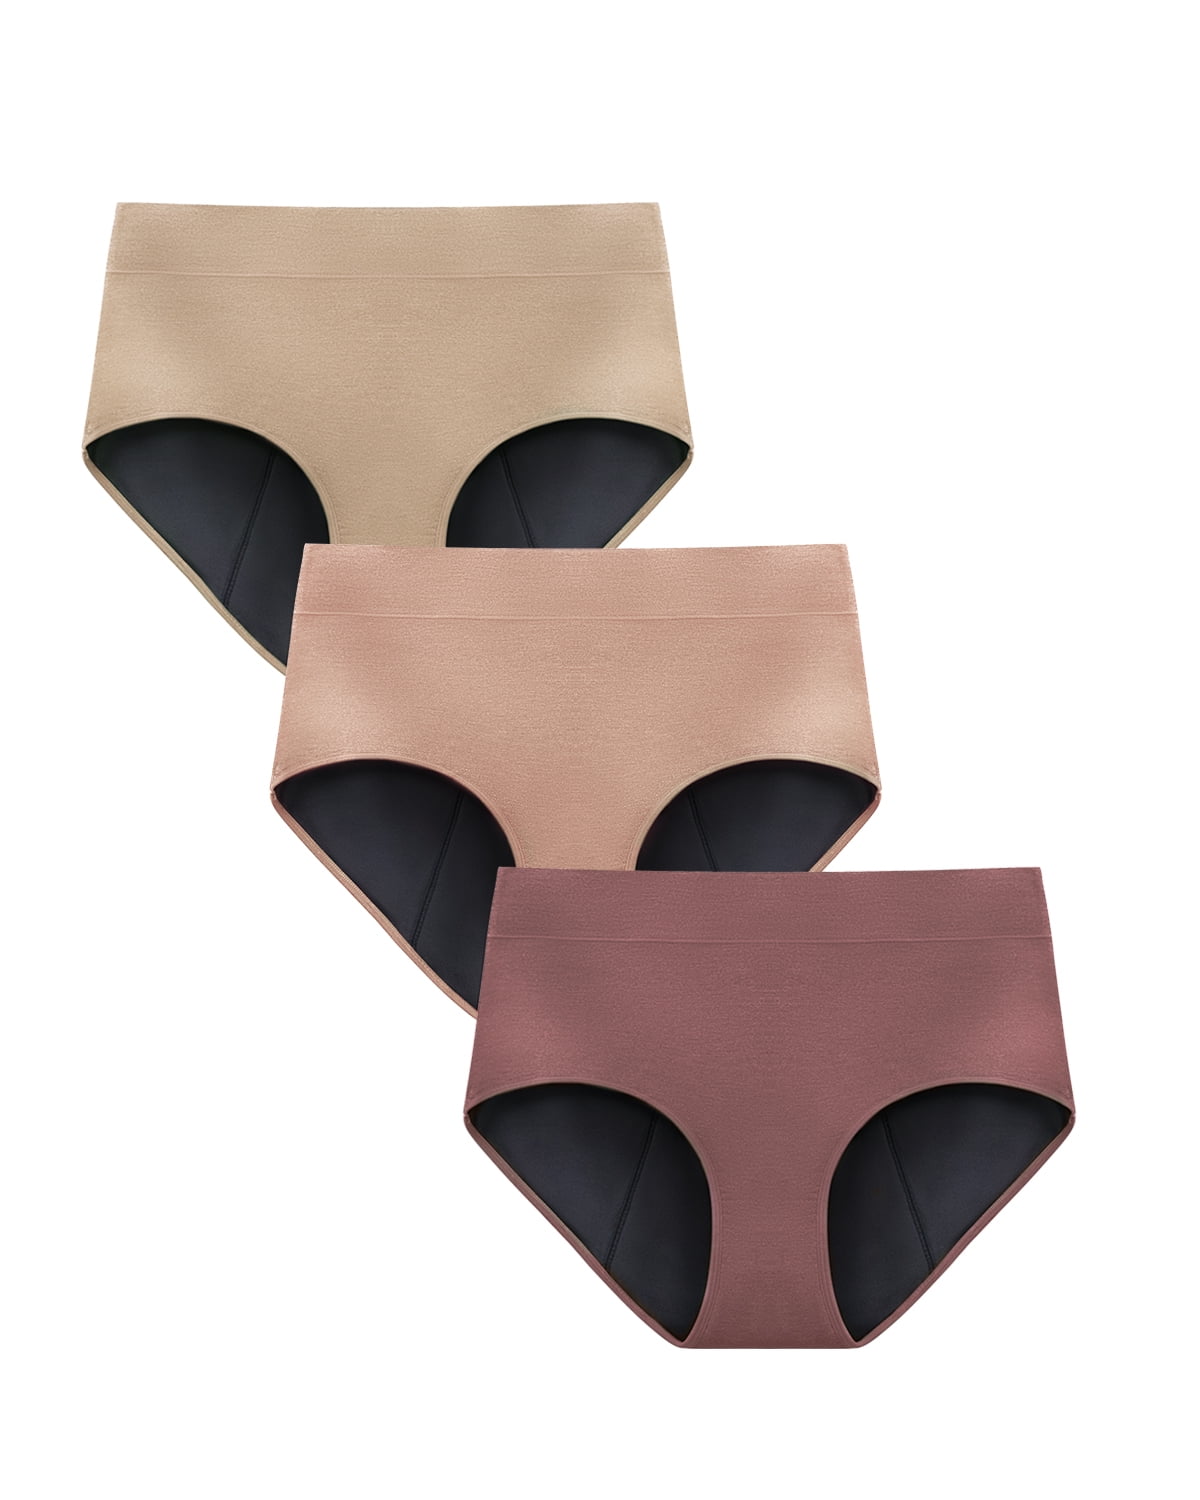 Flowies 3 PACK Sport Period Panties Multi Color Pack Black, Nude, Pink Eco  Menstrual Panty Bladder Leakage Panties Leakproof Underwear 